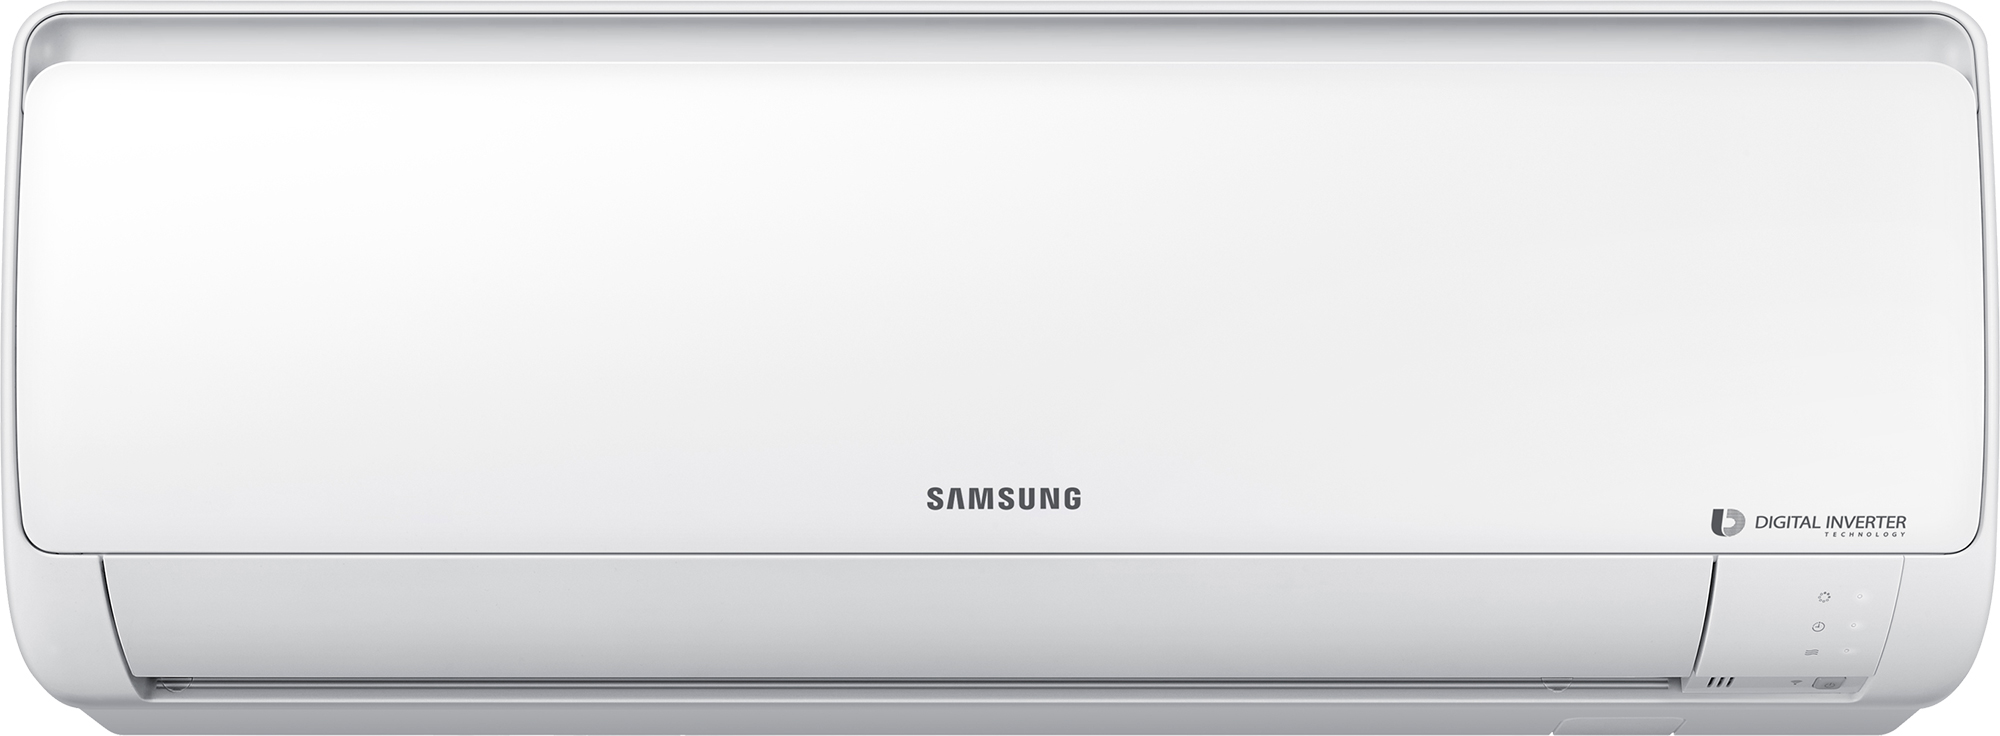 Кондиционер сплит-система Samsung AR18RSFPAWQNER / AR18RSFPAWQXER в интернет-магазине, главное фото